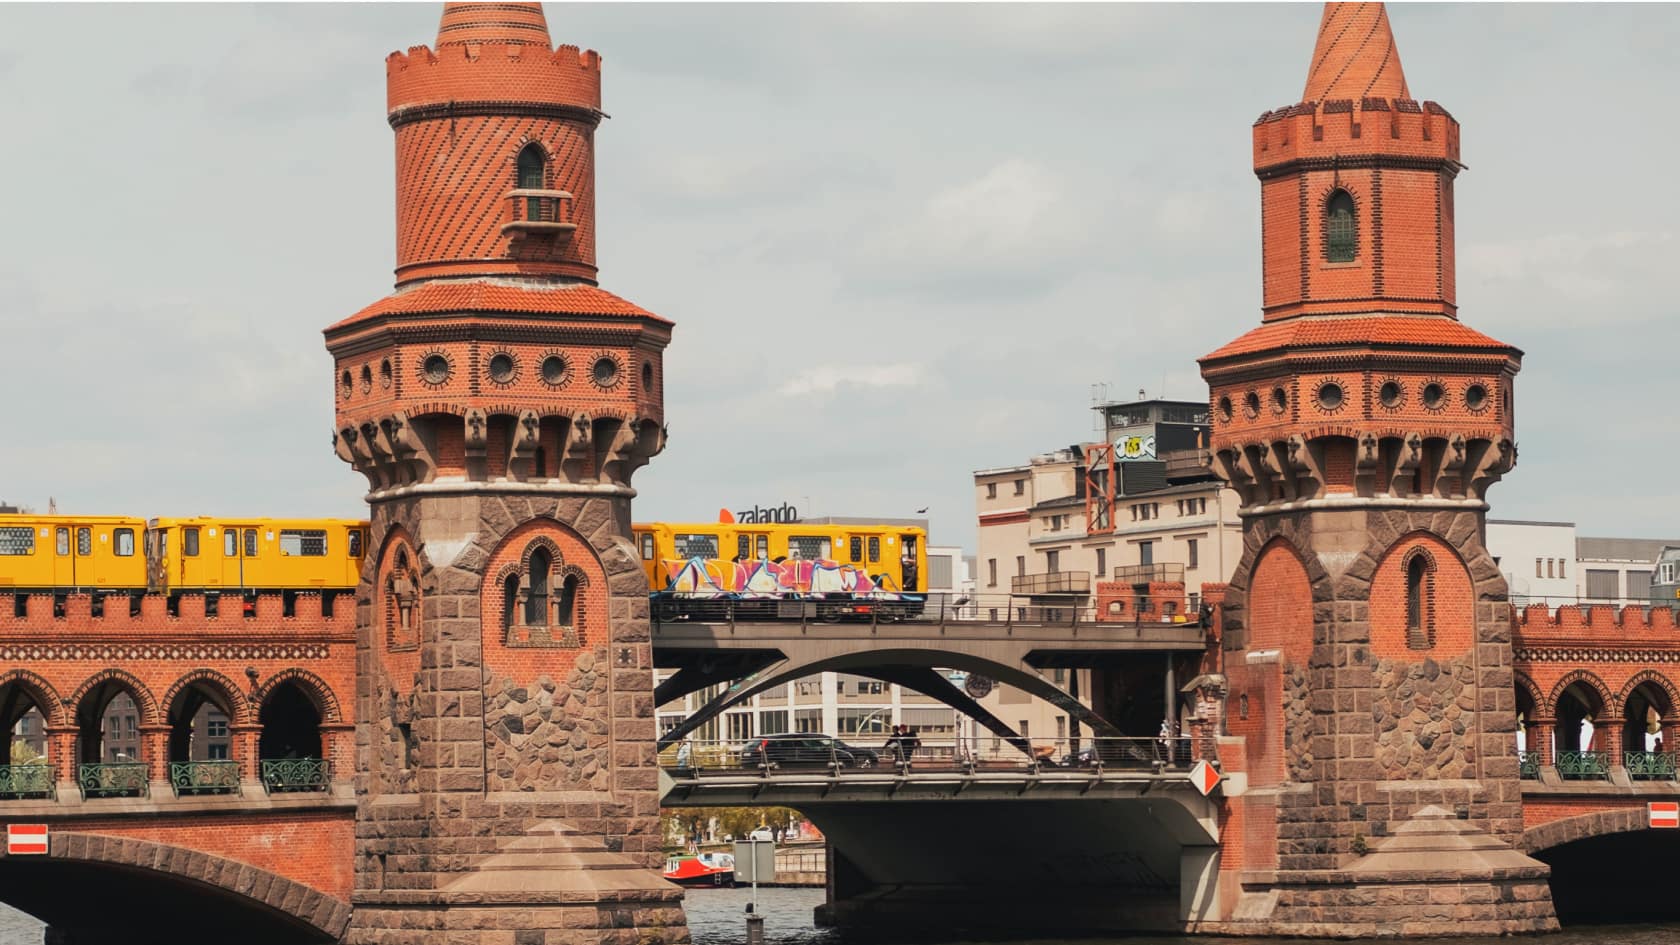 Blick auf die Oberbaumbrücke zwischen Friedrichshain & Kreuzberg - architektonischer Höhepunkt beim Stadtspaziergang durch Berlin